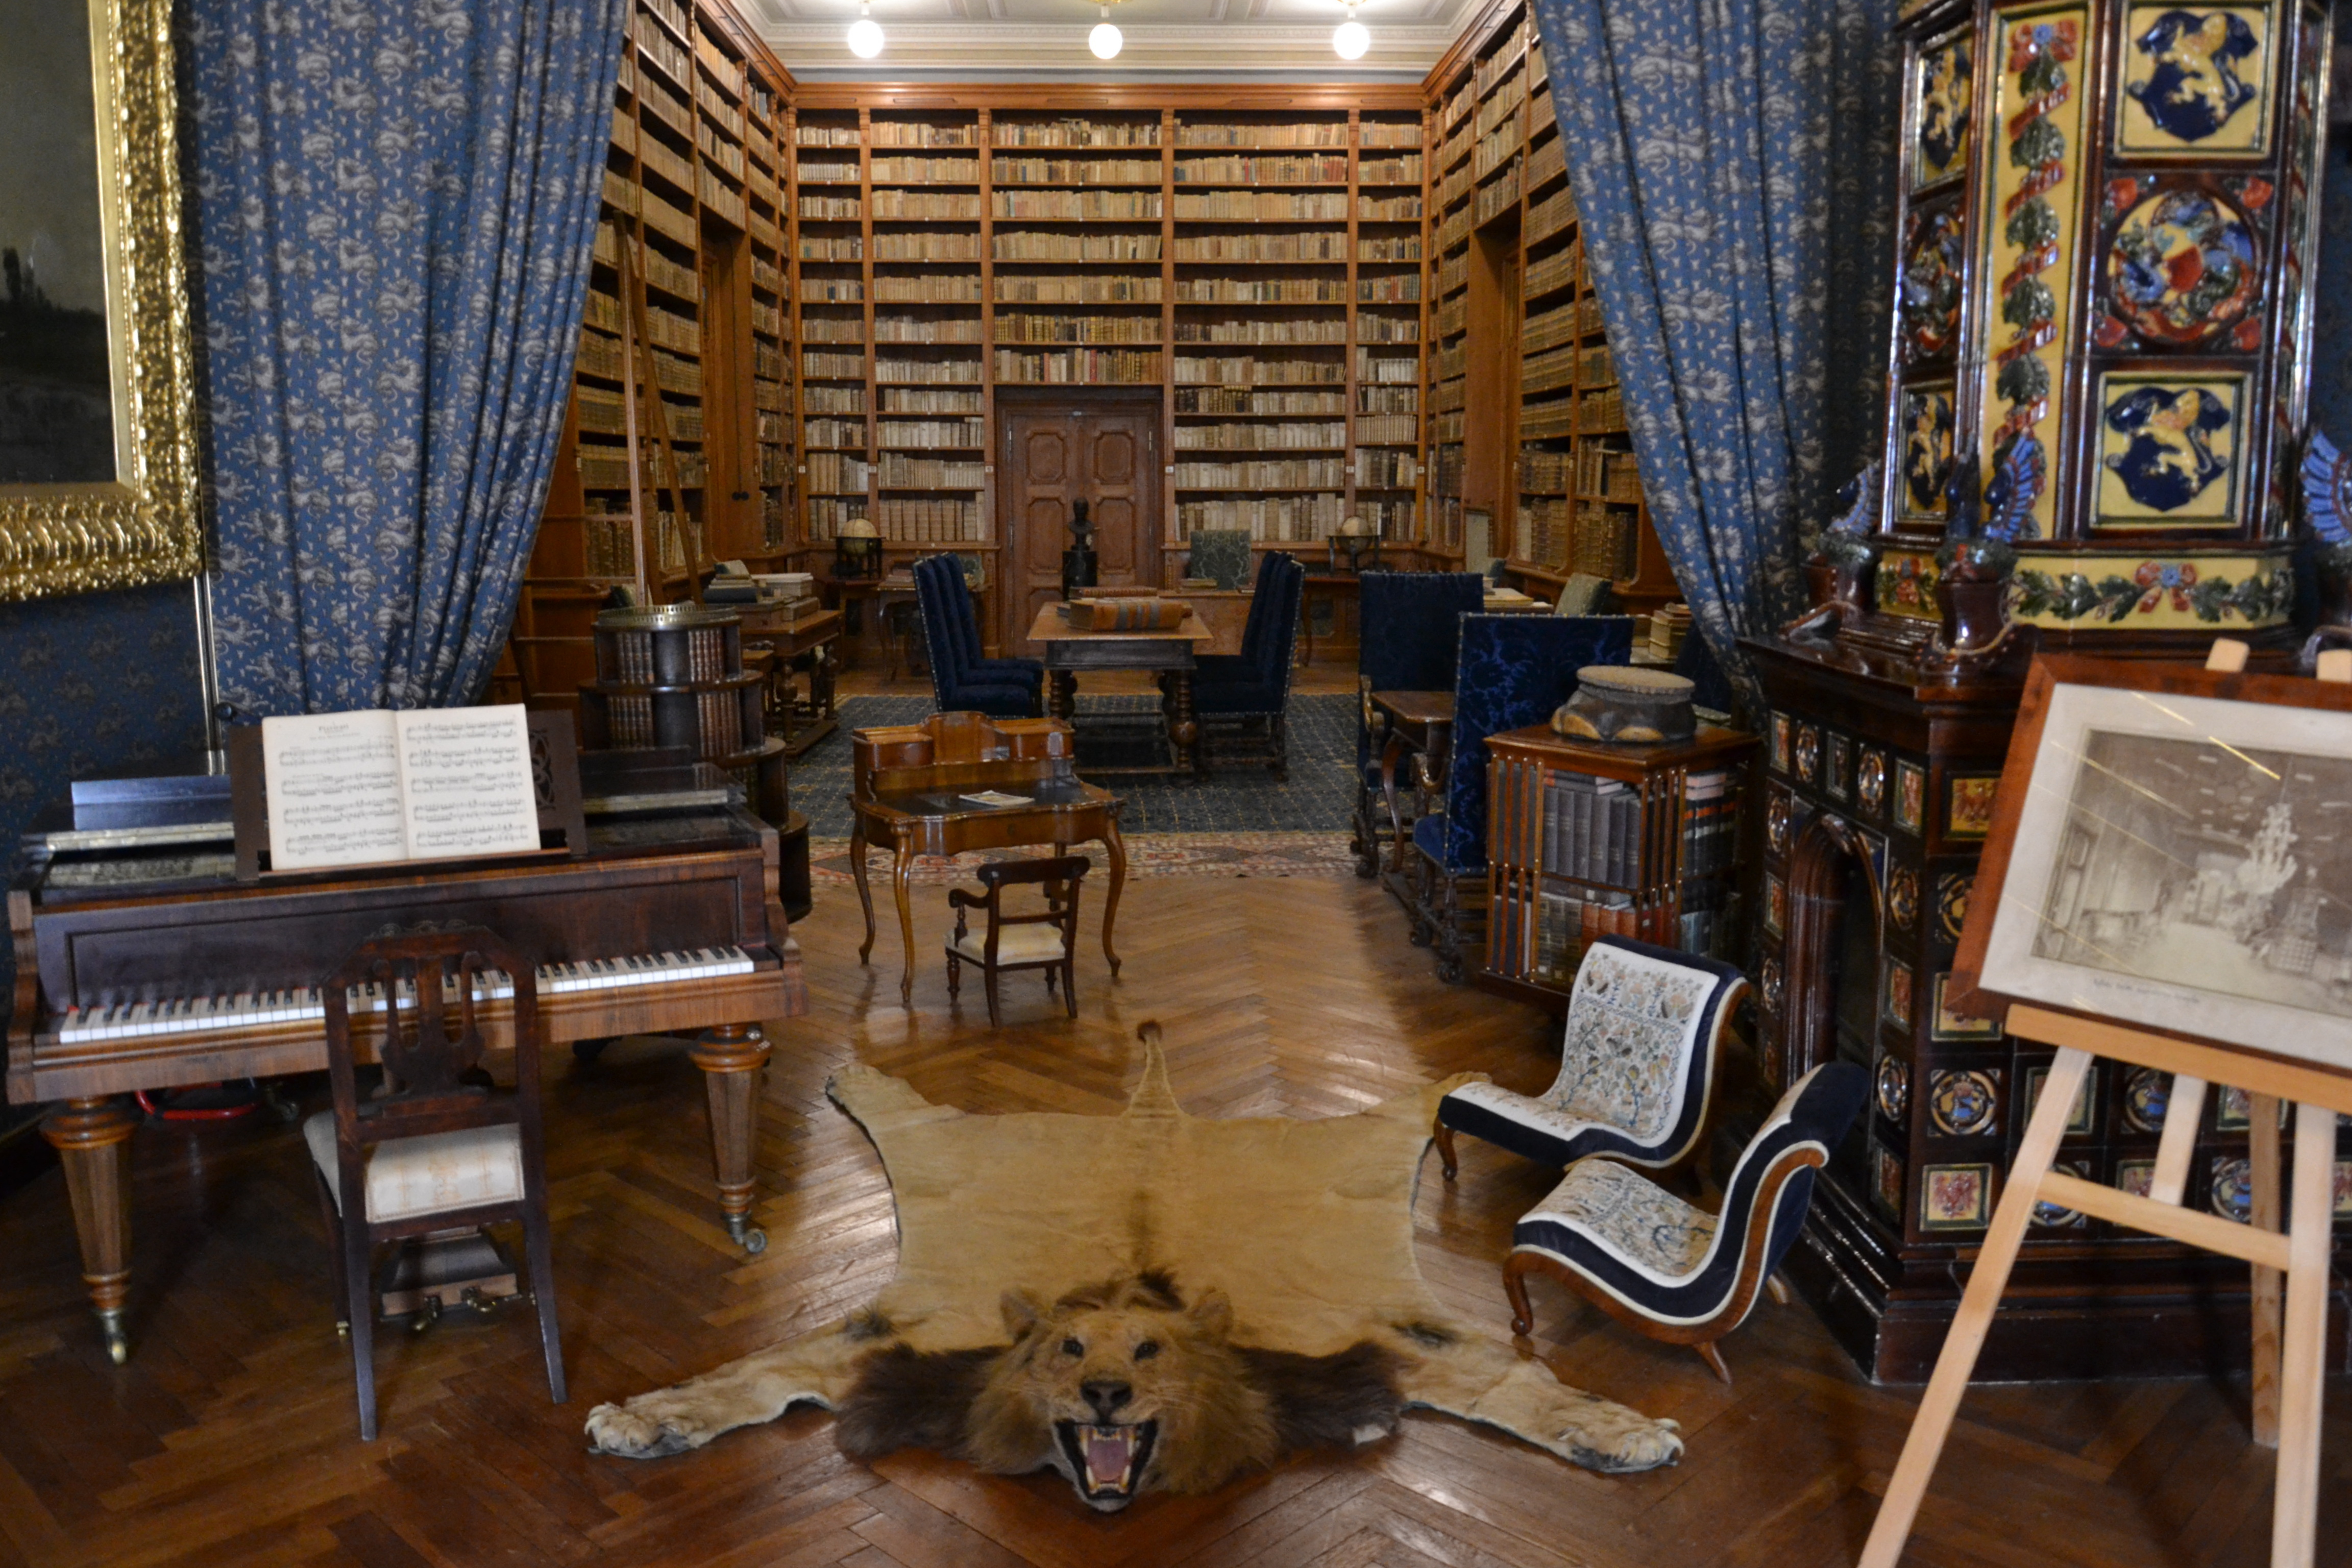 Betléri kastély könyvtára